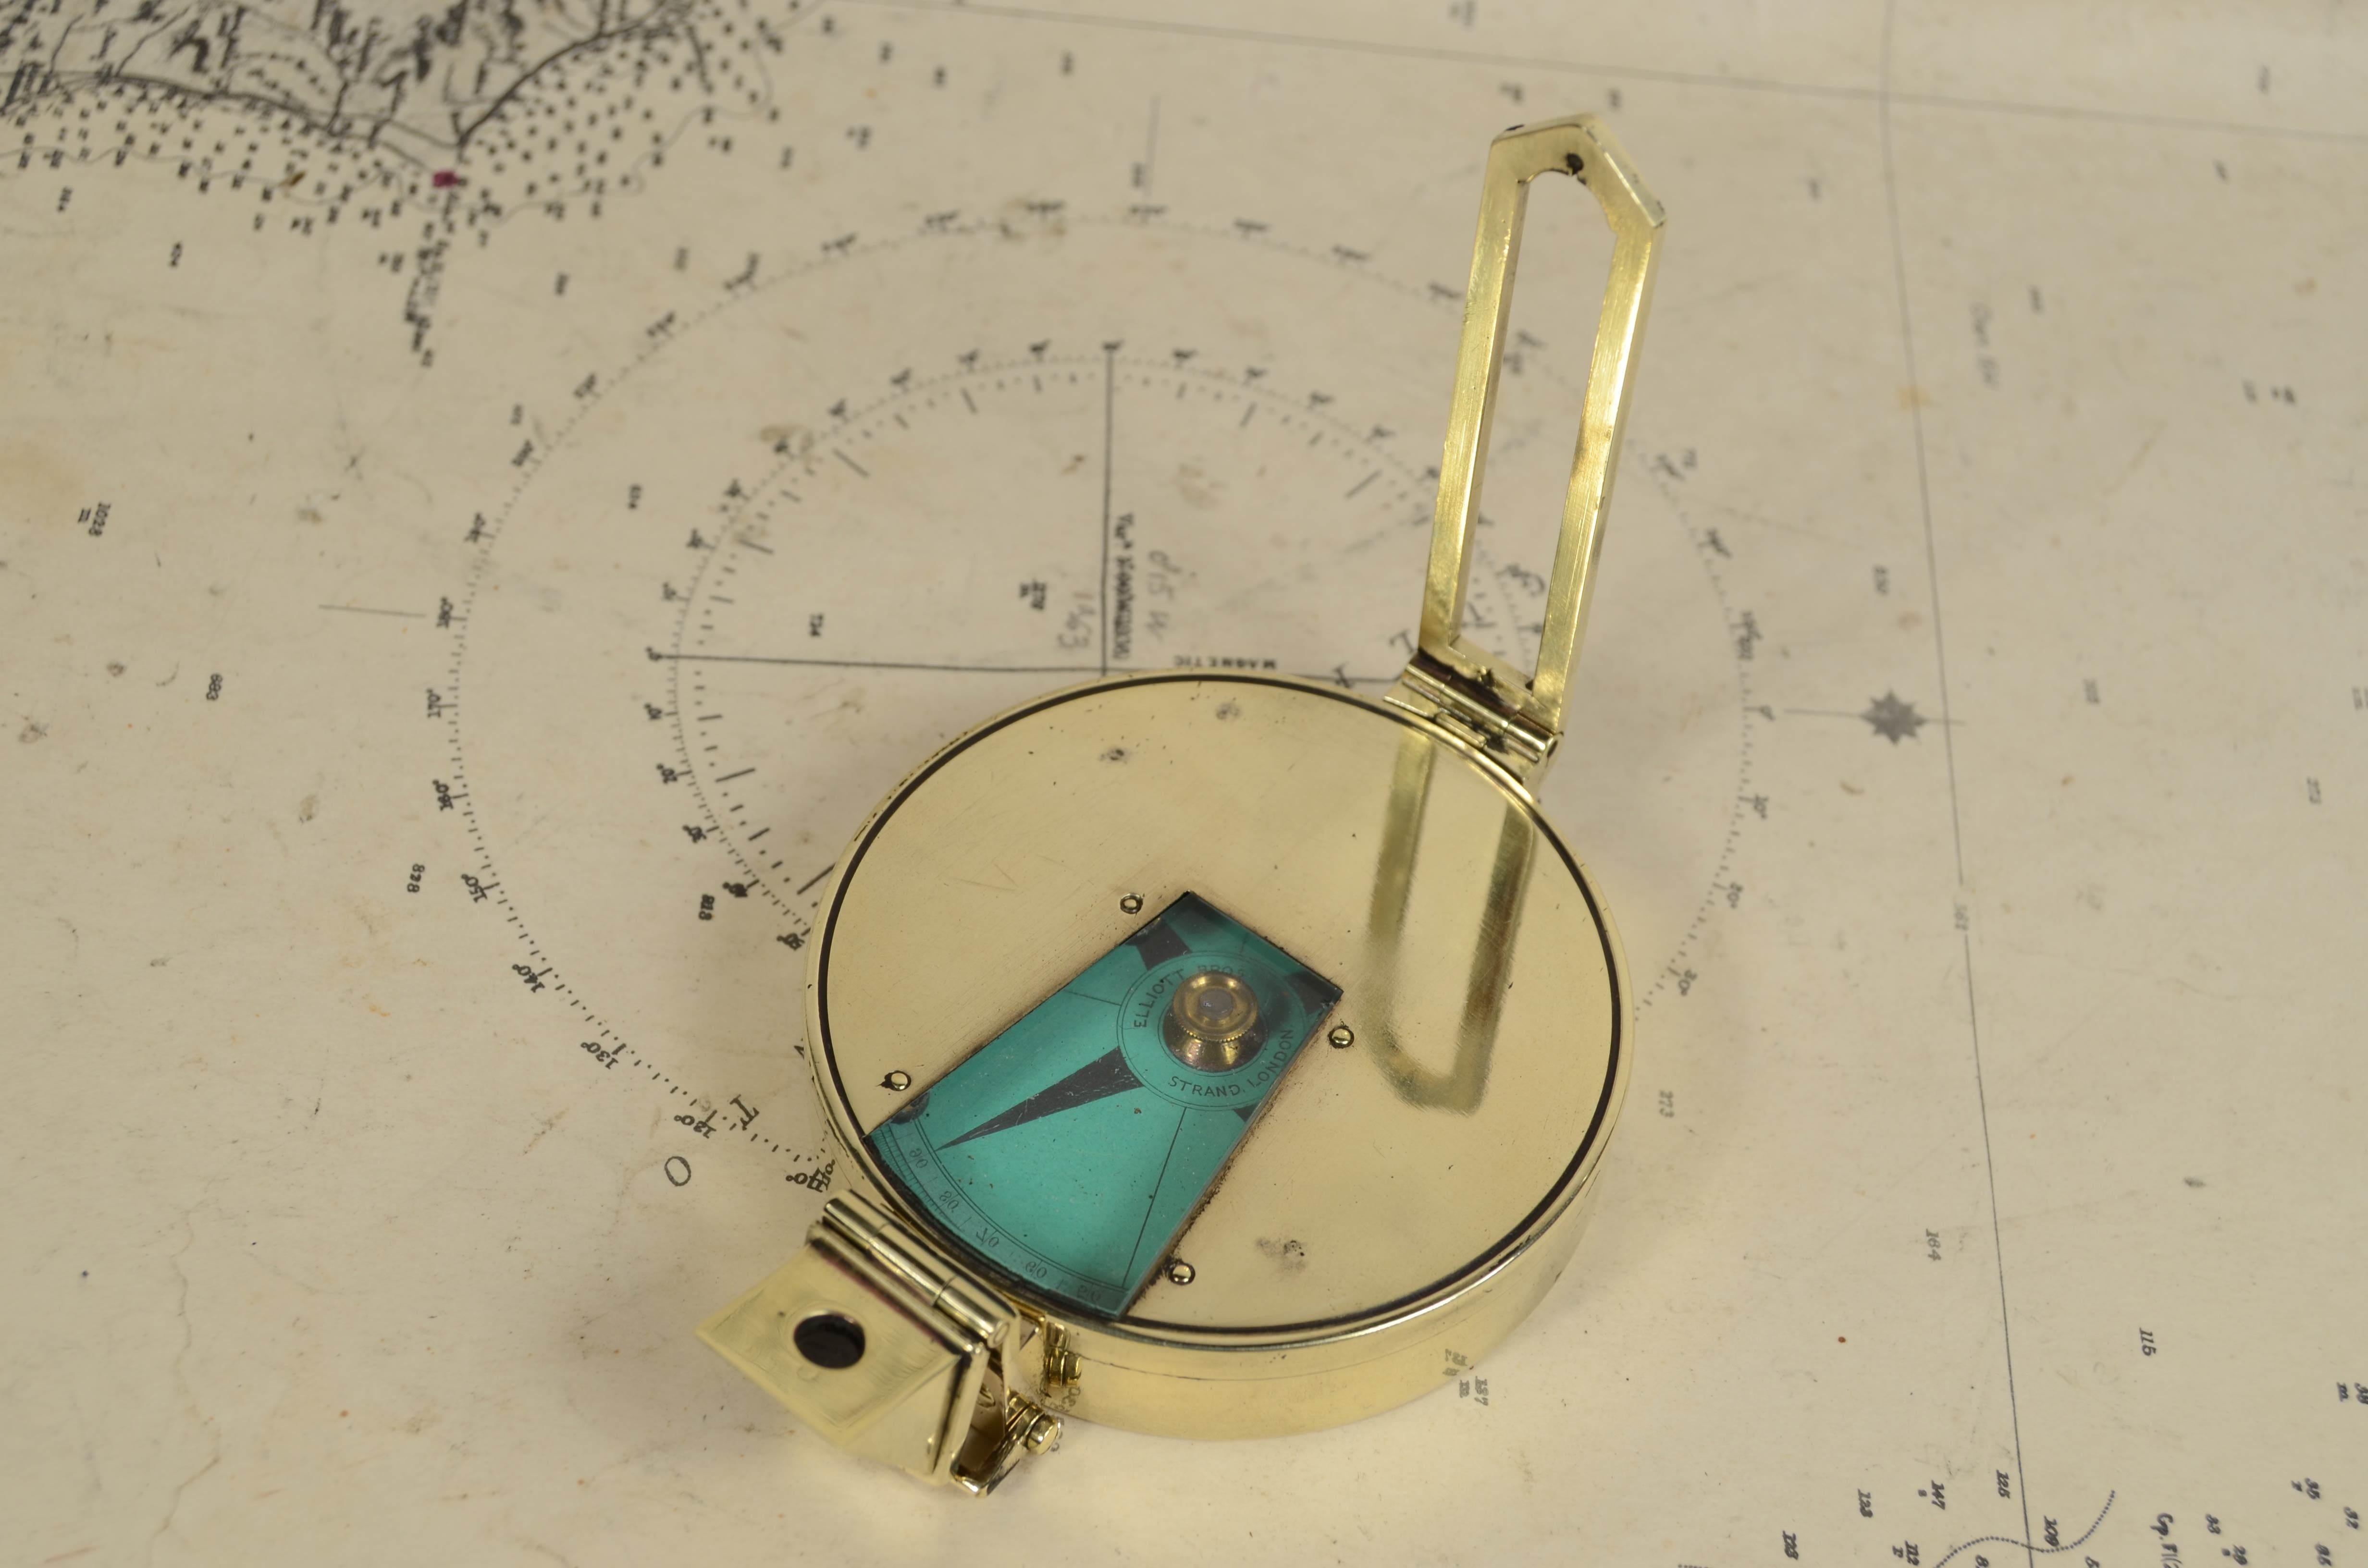 Rare boussole d'arpentage nautique magnétique en laiton de la fin du 19e siècle, signée Elliott Bros London et accompagnée d'un étui en cuir. Il s'agit d'un petit compas de 7 cm de diamètre, généralement utilisé pour la navigation de plaisance,